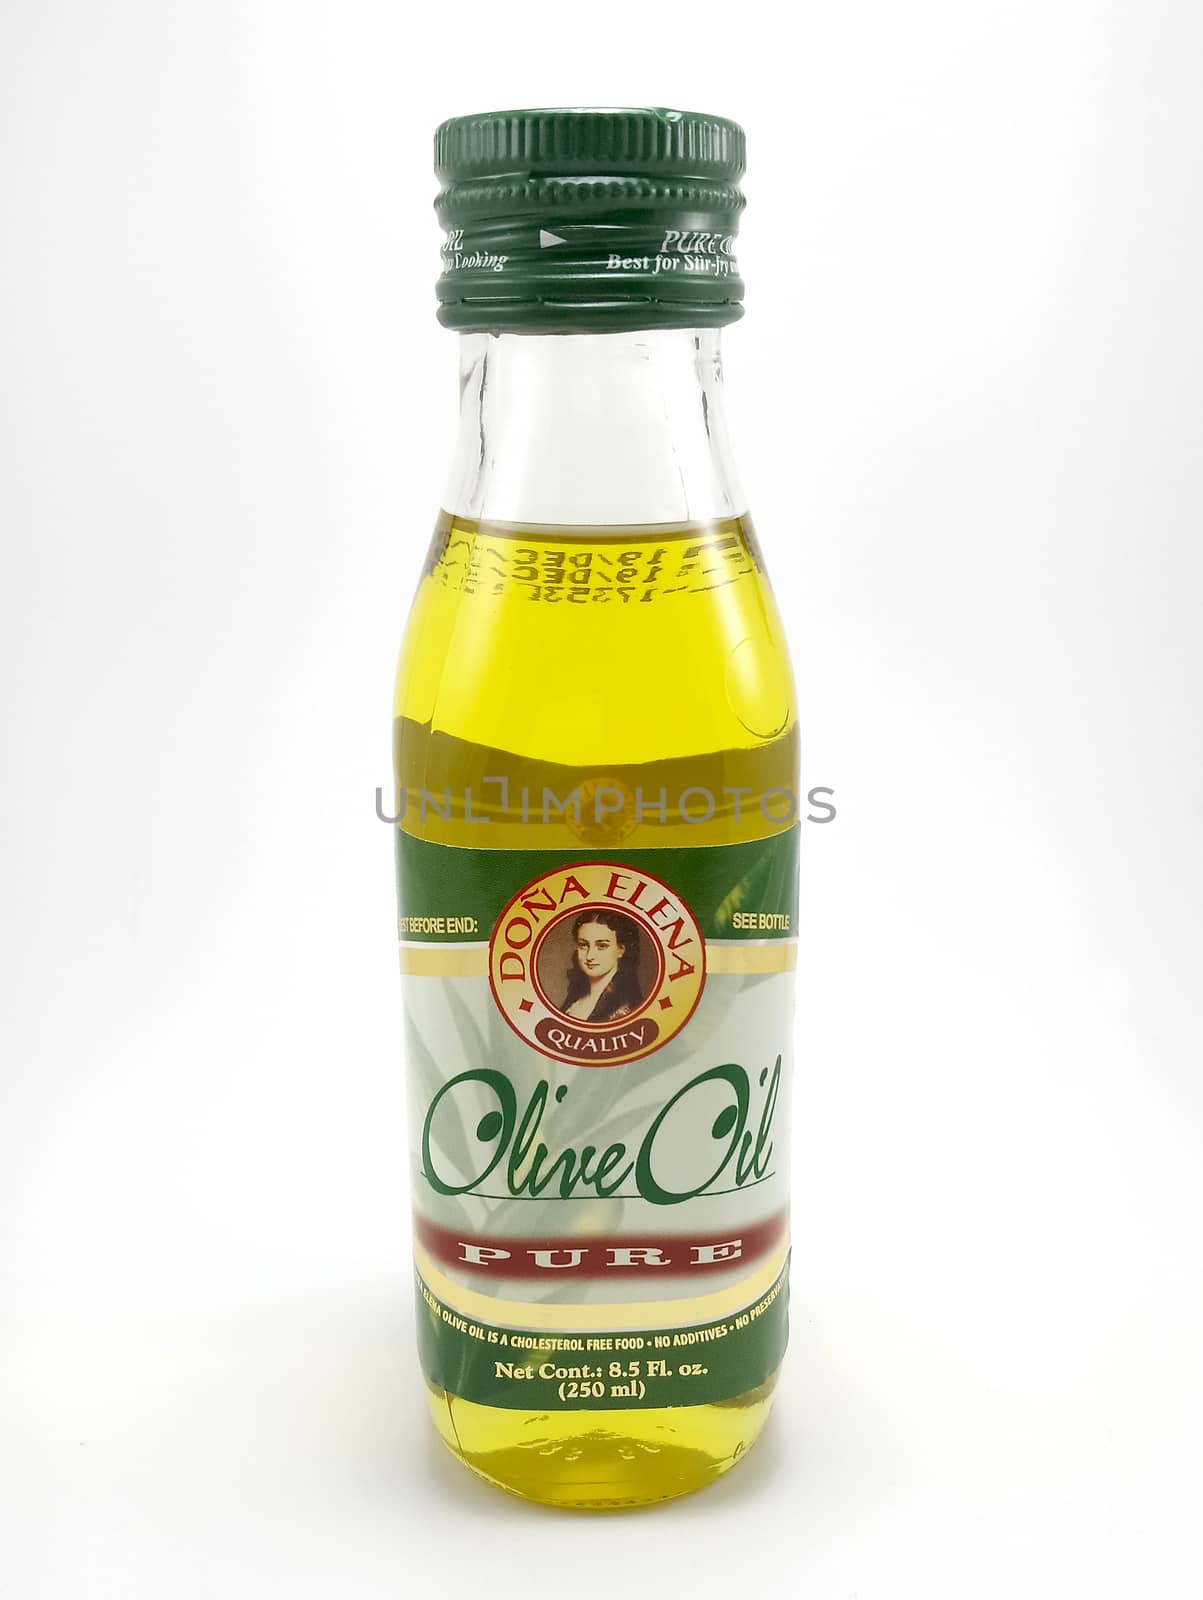 MANILA, PH - JUNE 23 - Dona Elena pure olive oil on June 23, 2020 in Manila, Philippines.